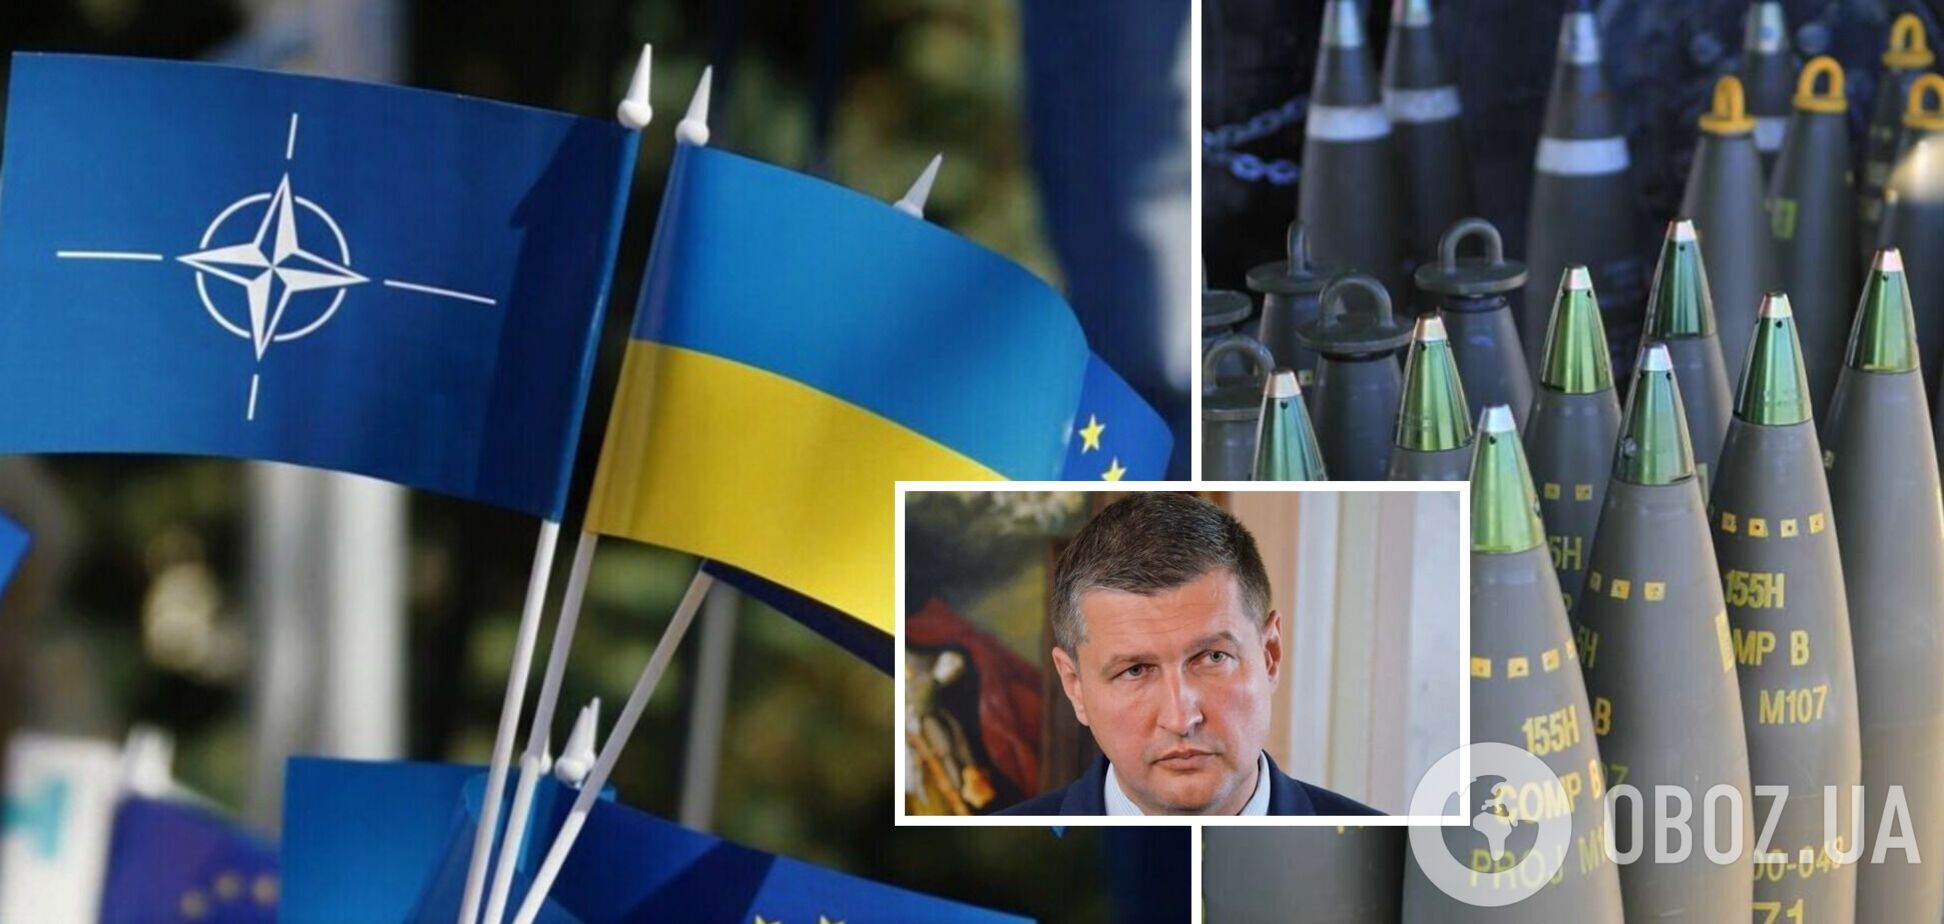 'Ожидаем положительных сигналов': эксперт оценил перспективы вступления Украины в ЕС и НАТО и назвал залог успеха ВСУ